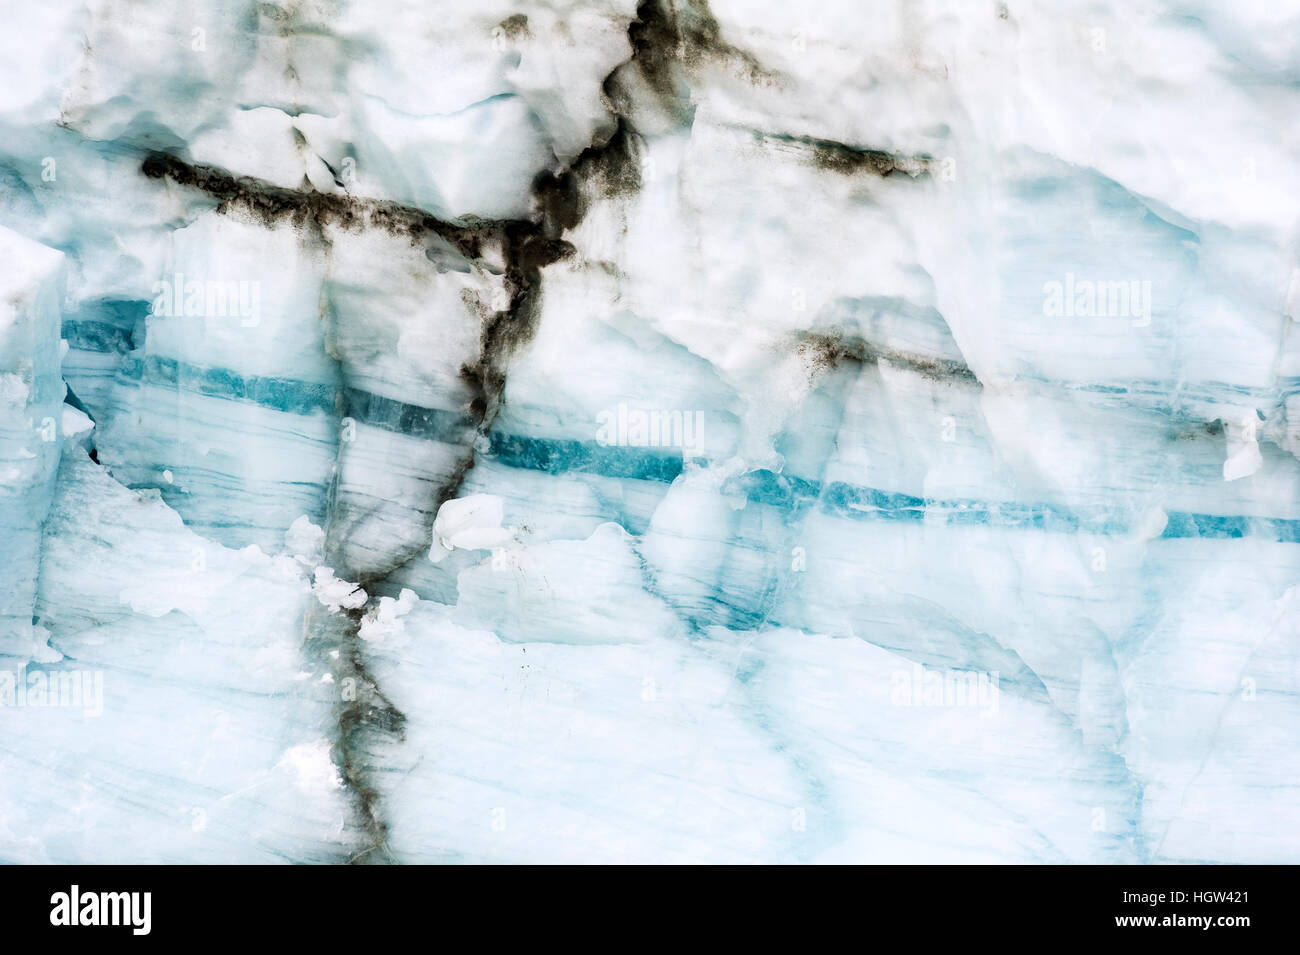 La stratificazione o bande che si sviluppa in un ghiacciaio durante il processo di trasformazione della neve al ghiacciaio. Foto Stock